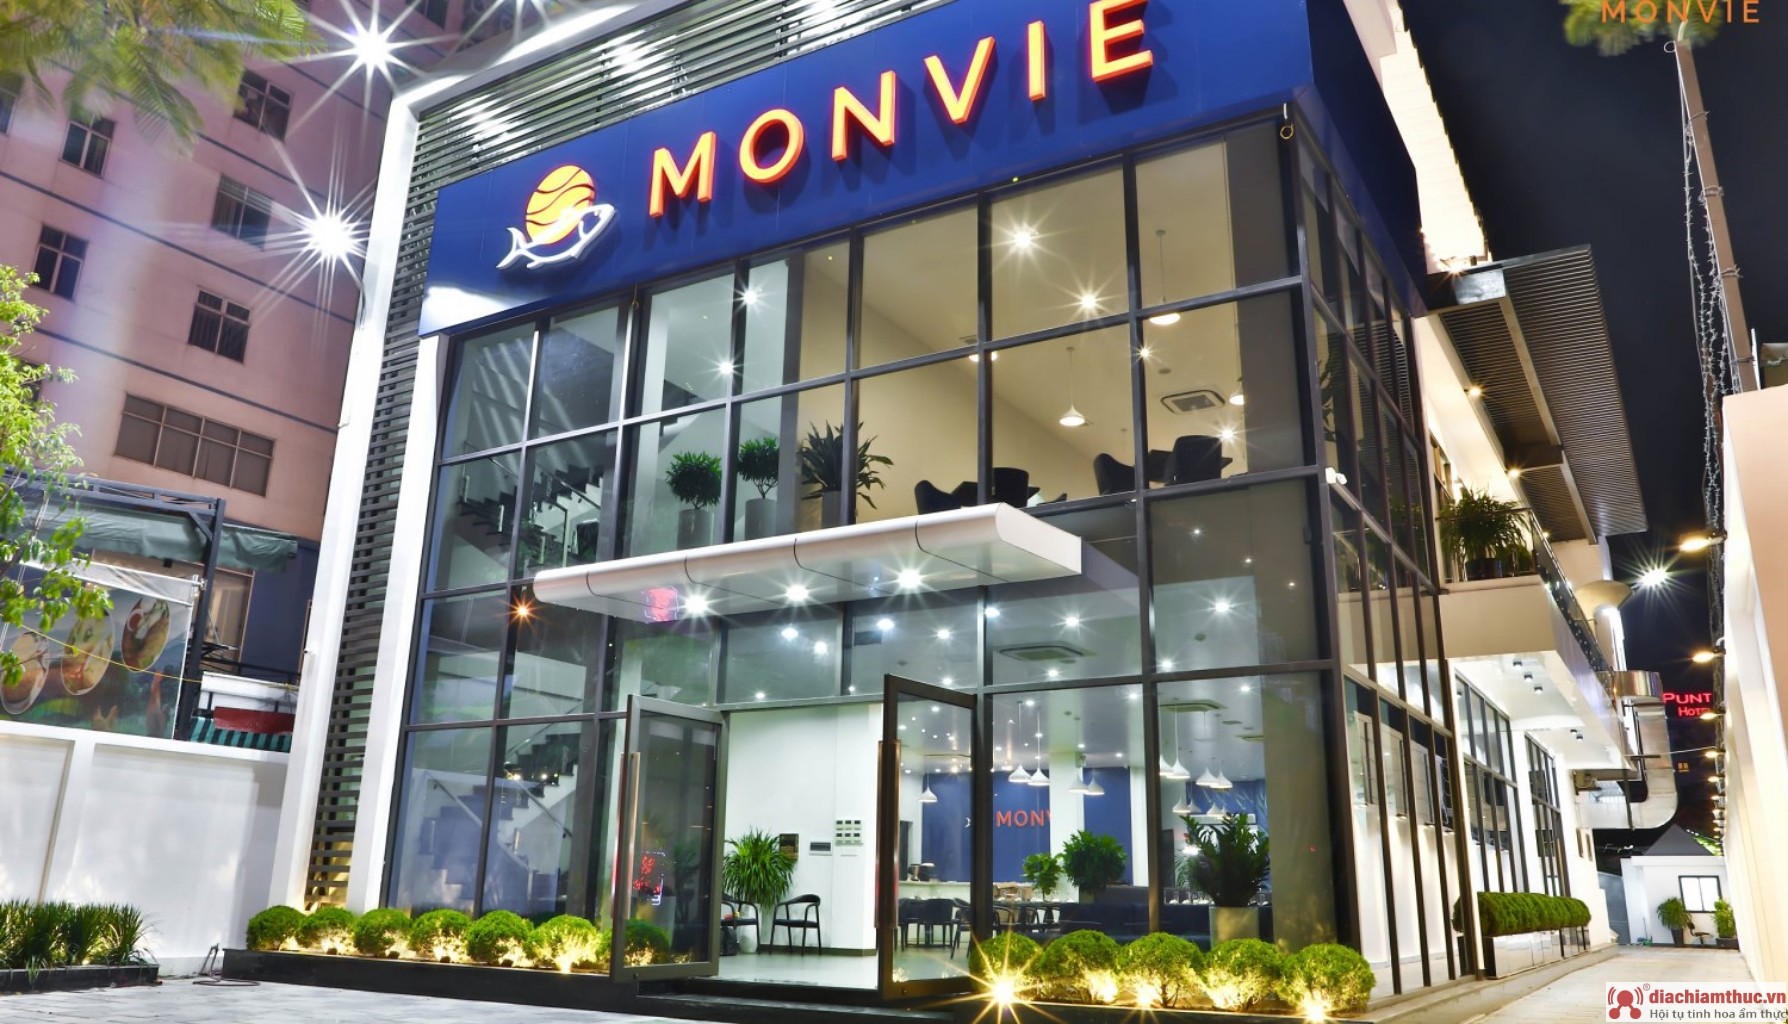 Monvie Restaurant